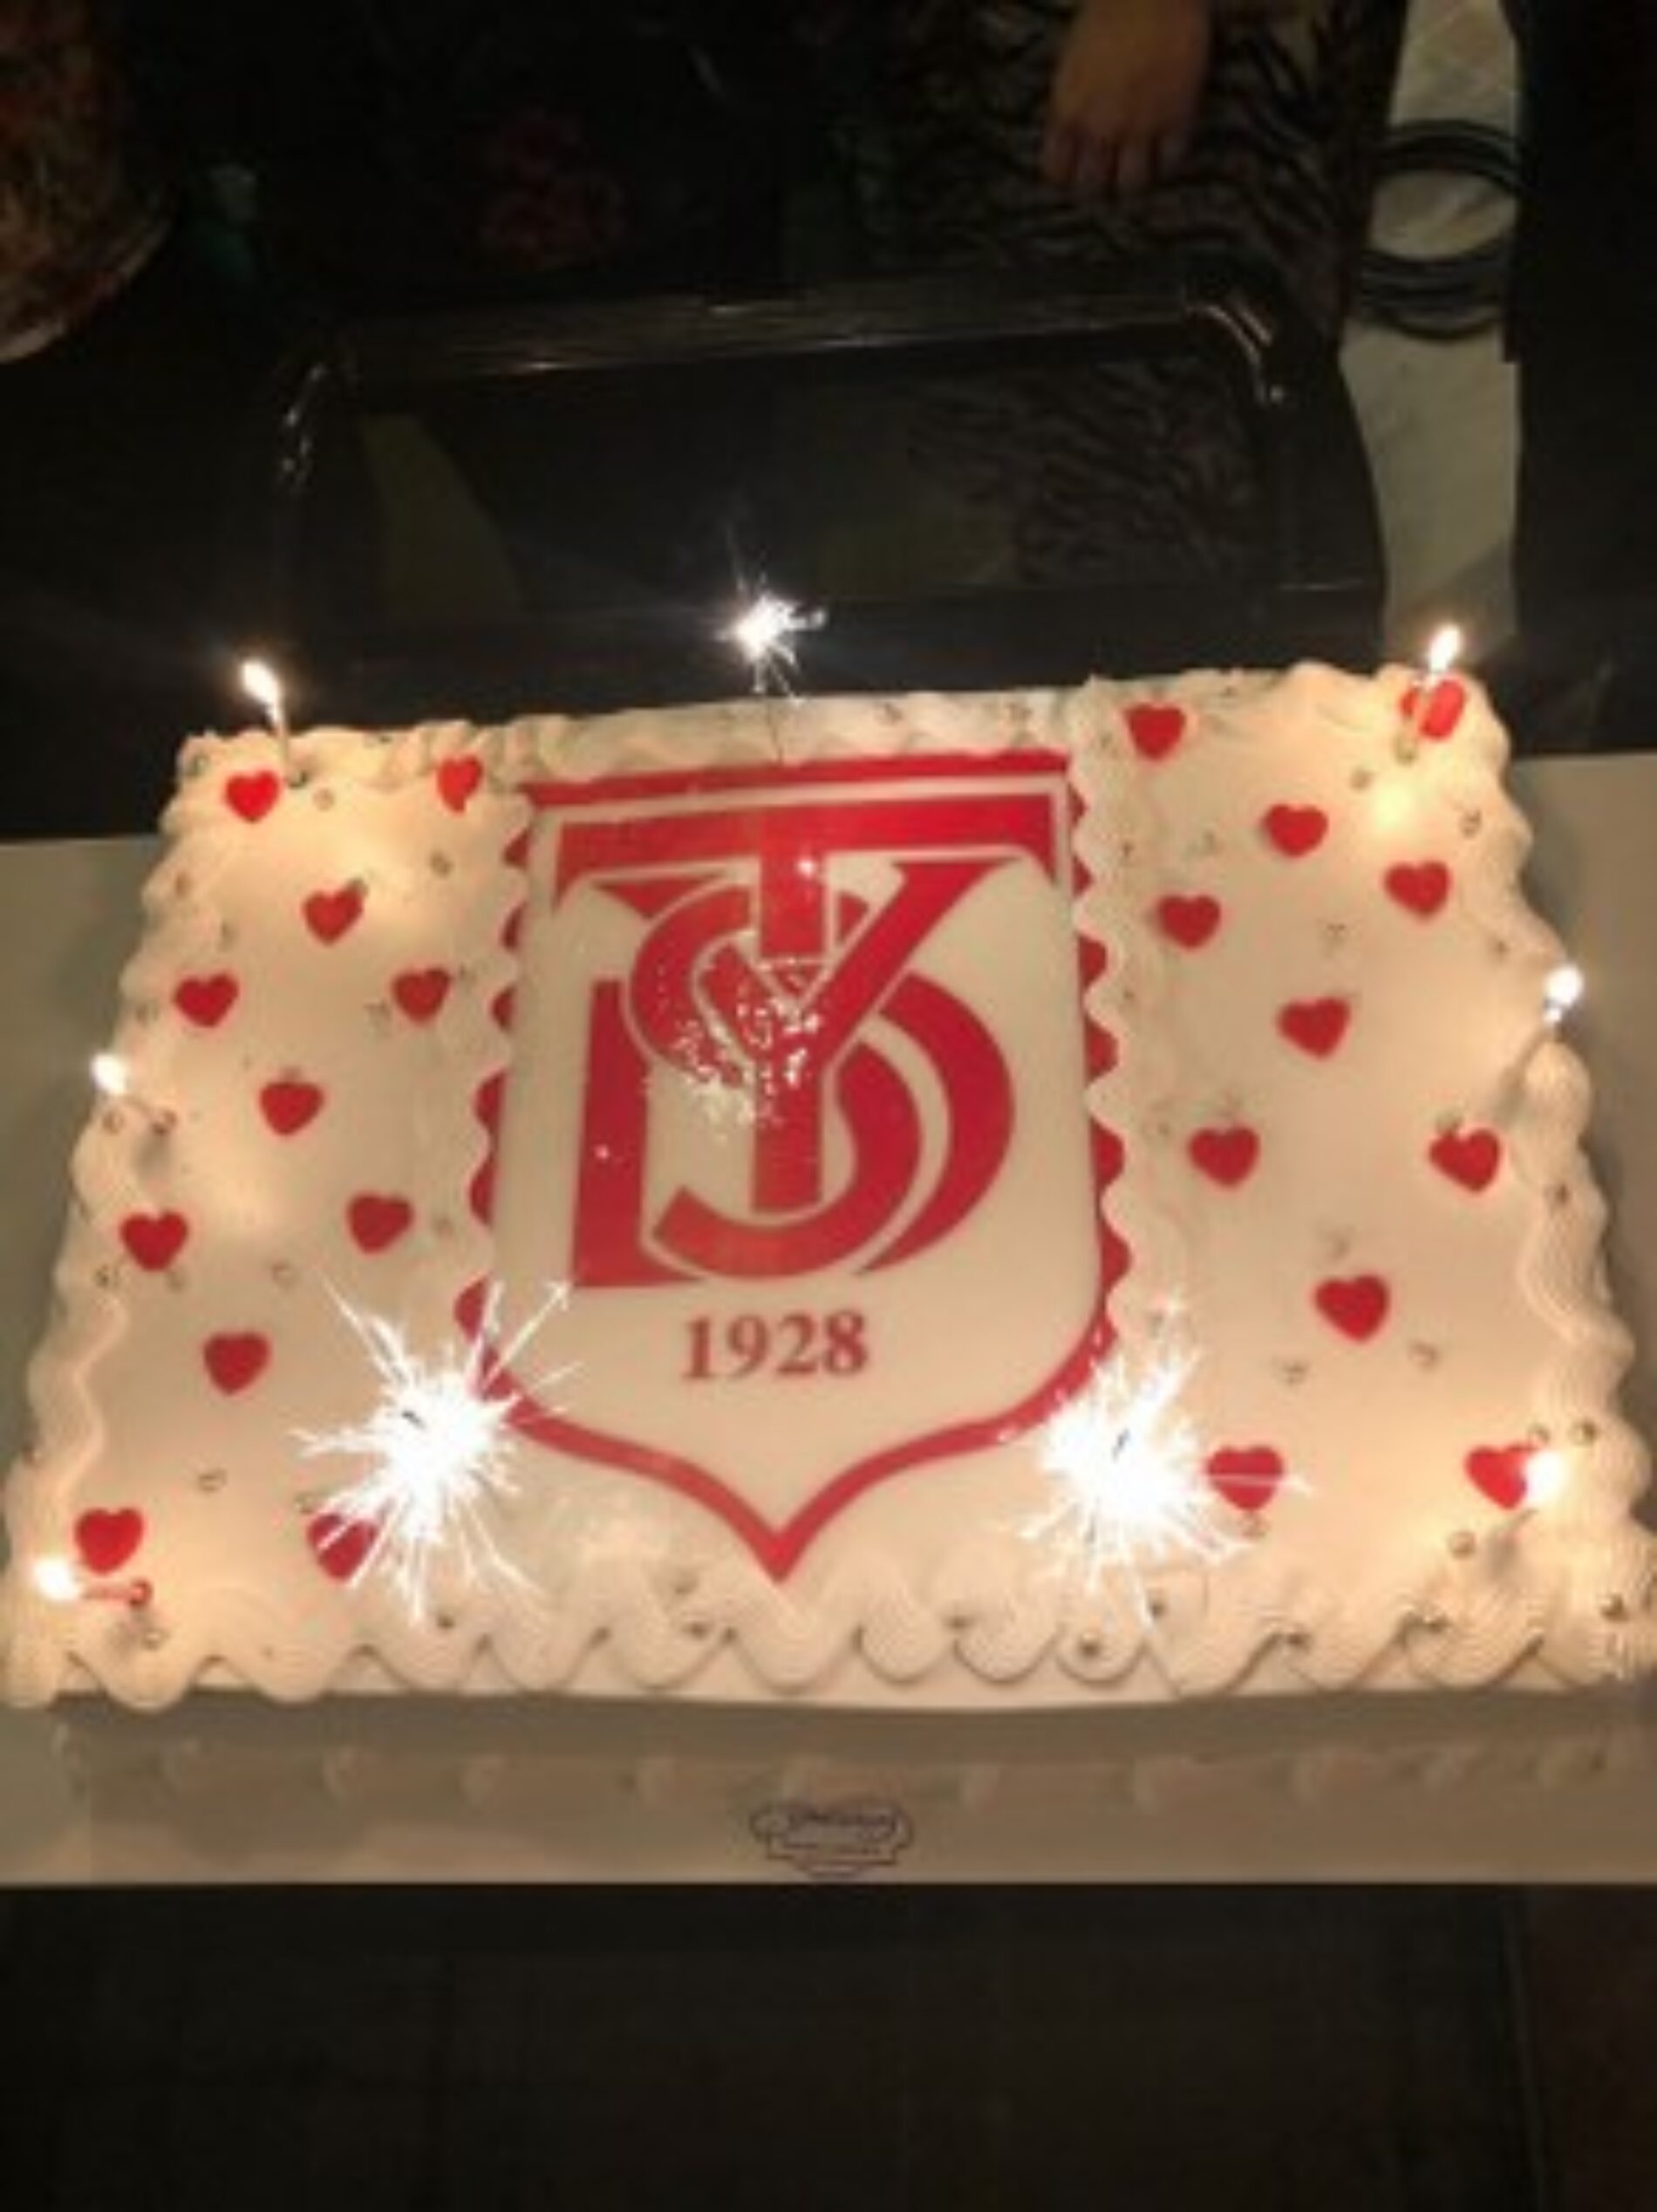 TYSD Soma Şubemiz 94. Kuruluş Yıldönümümüzü Coşku ve Mutlulukla Kutlamaktadır